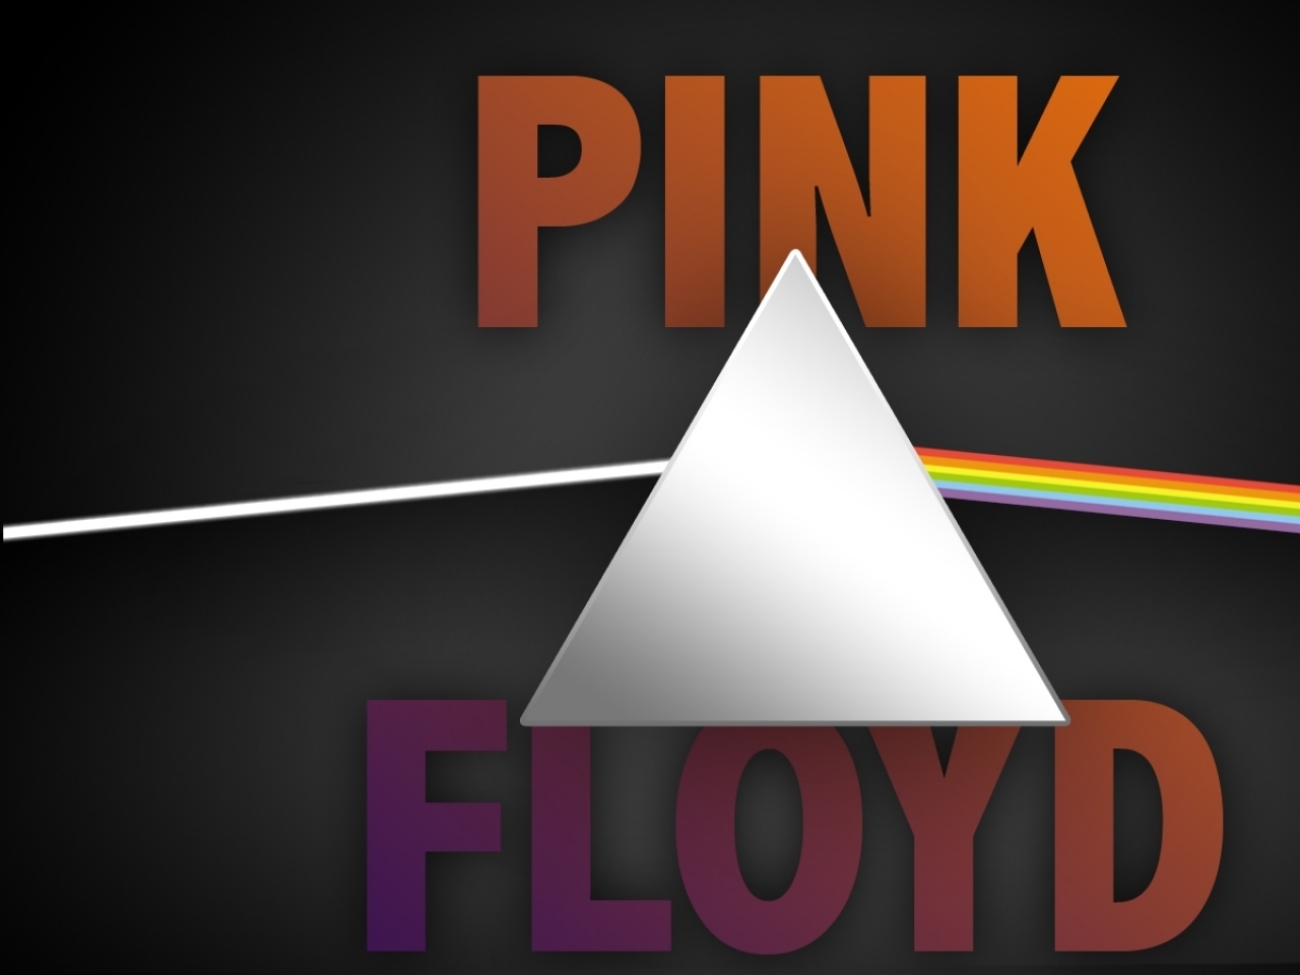 Pink Floyd Hd Wallpaper photos The Legendary Pink Floyd HD Wallpaper